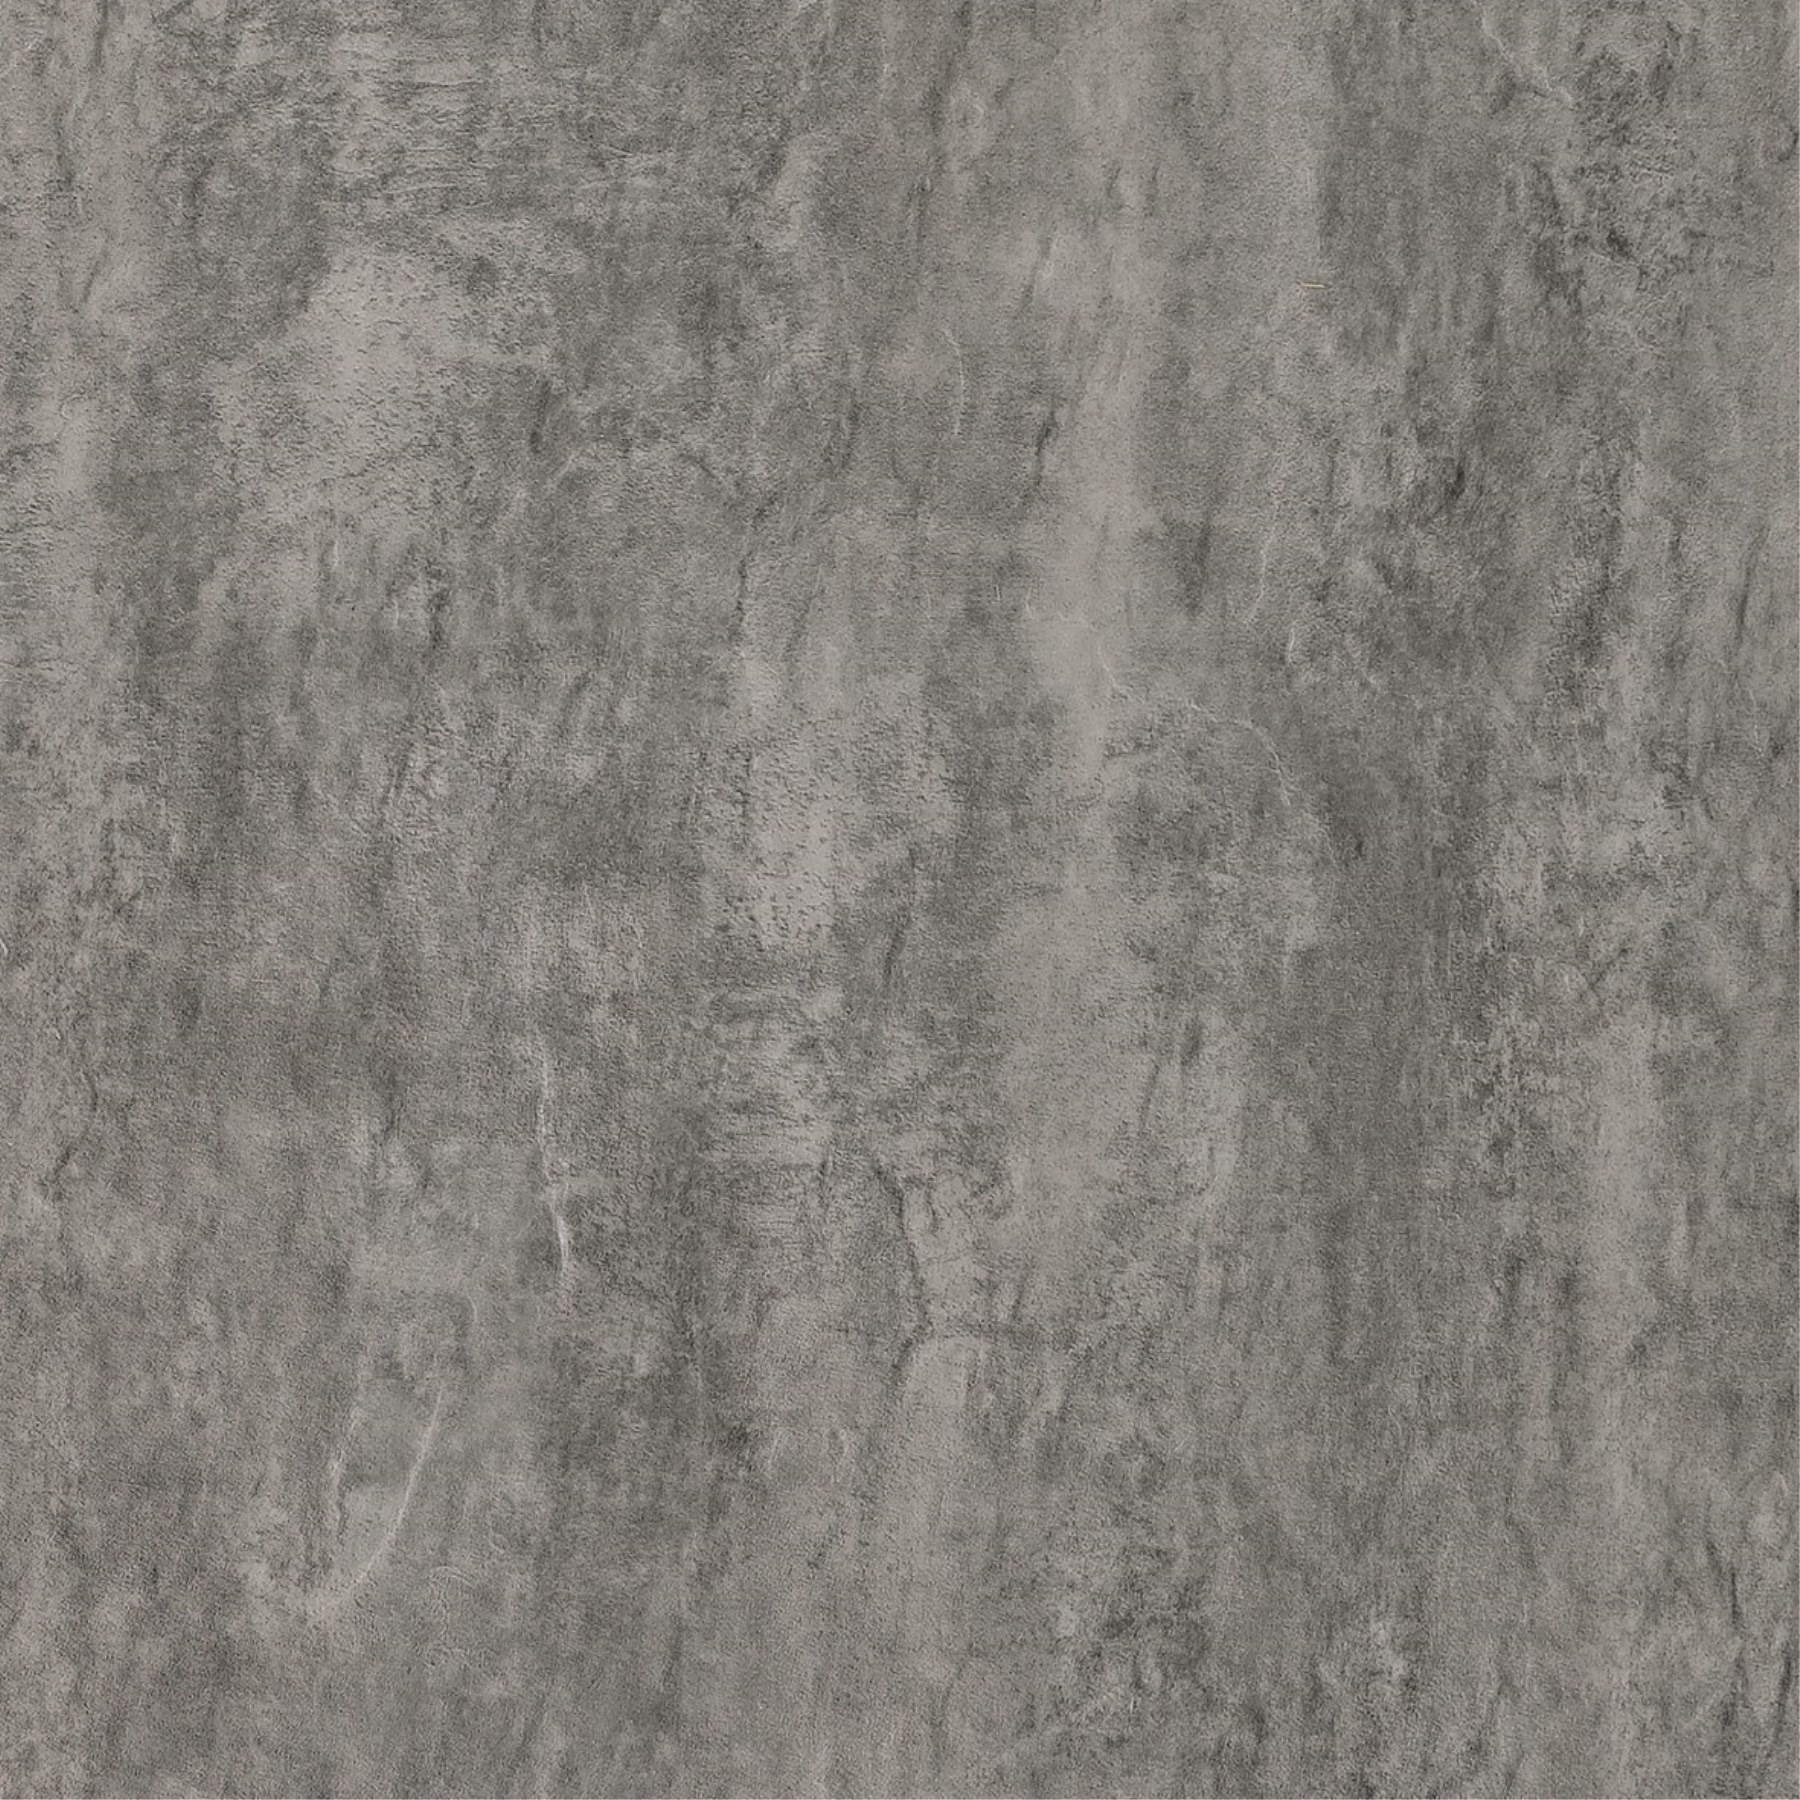 1223046 - Vinylboden Eleganto Concrete Natur wave lackiert